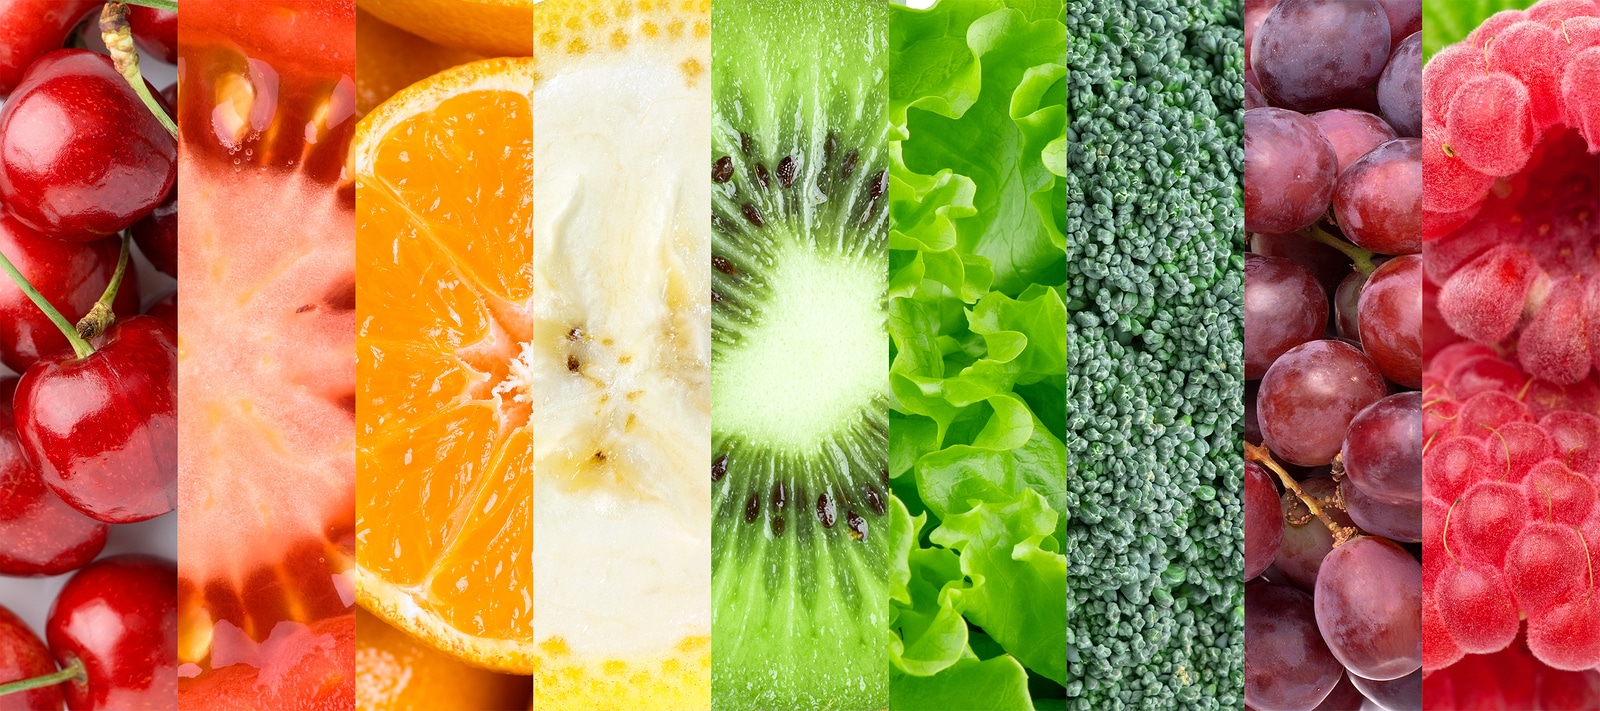 Los alimentos según su color